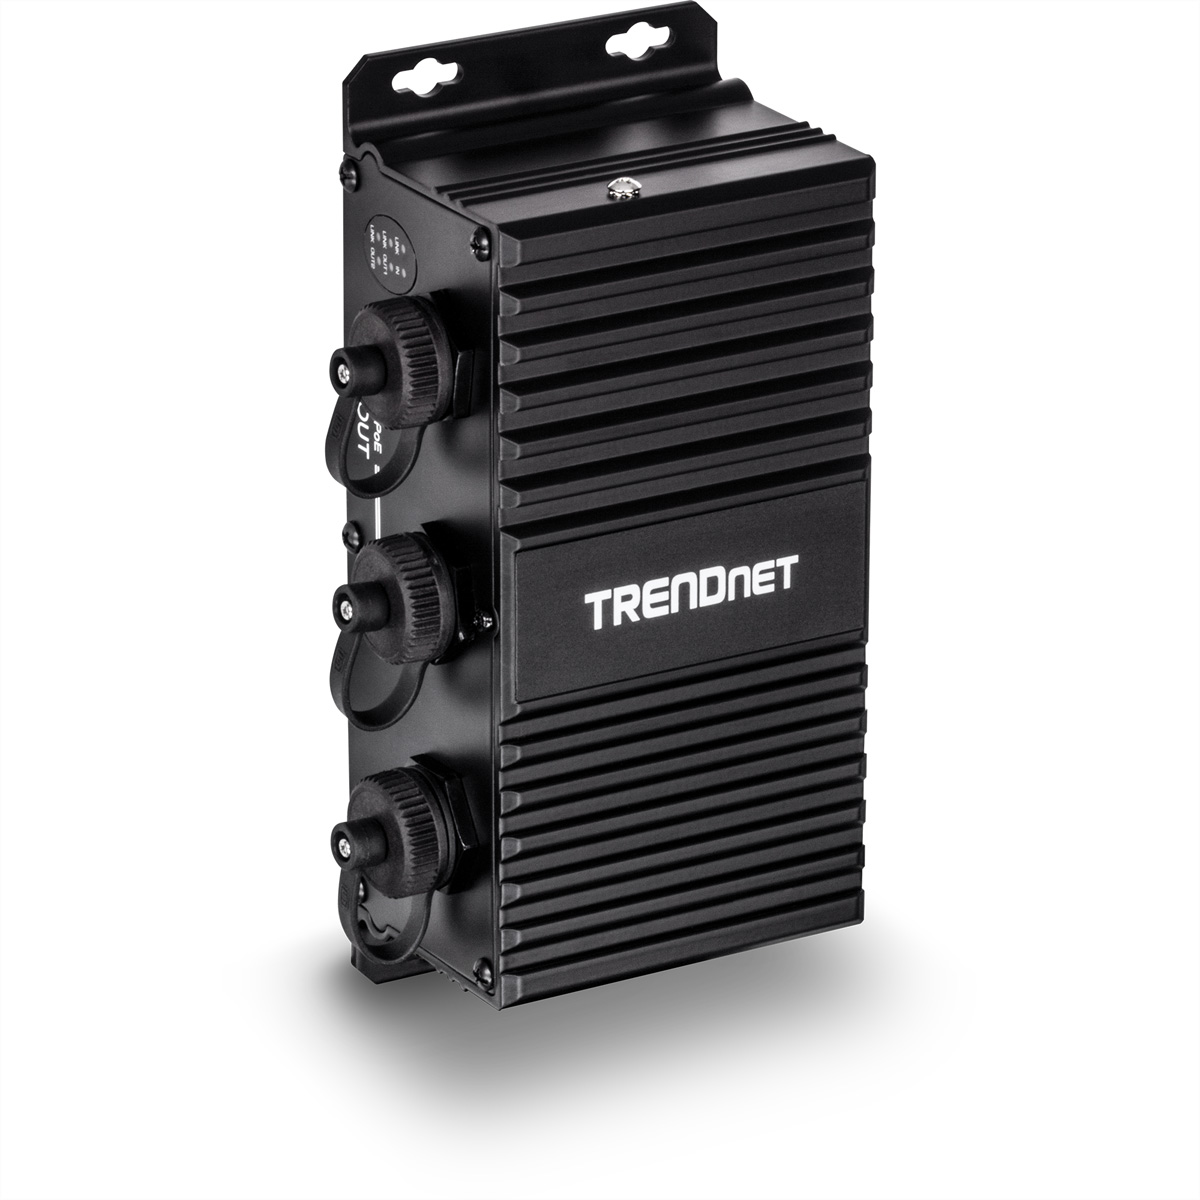 TRENDNET TI-EU120 Gigabit UPoE Injektor 2-Port Extender Industrial Outdoor PoE Gigabit